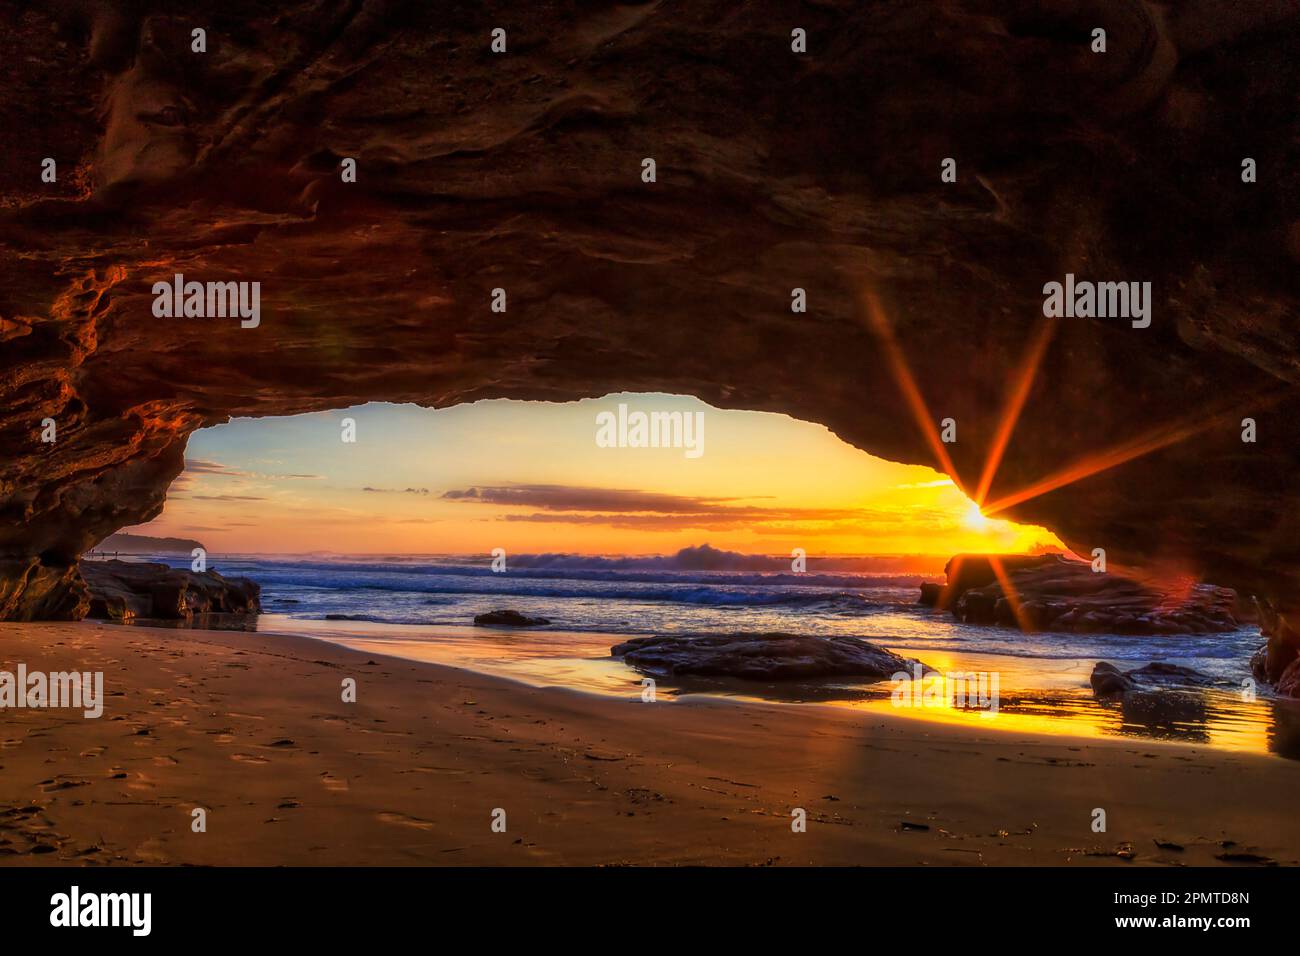 Soleil raies du soleil levant sur l'horizon de l'océan Pacifique depuis l'intérieur de la grotte de grès de la plage de Caves. Banque D'Images